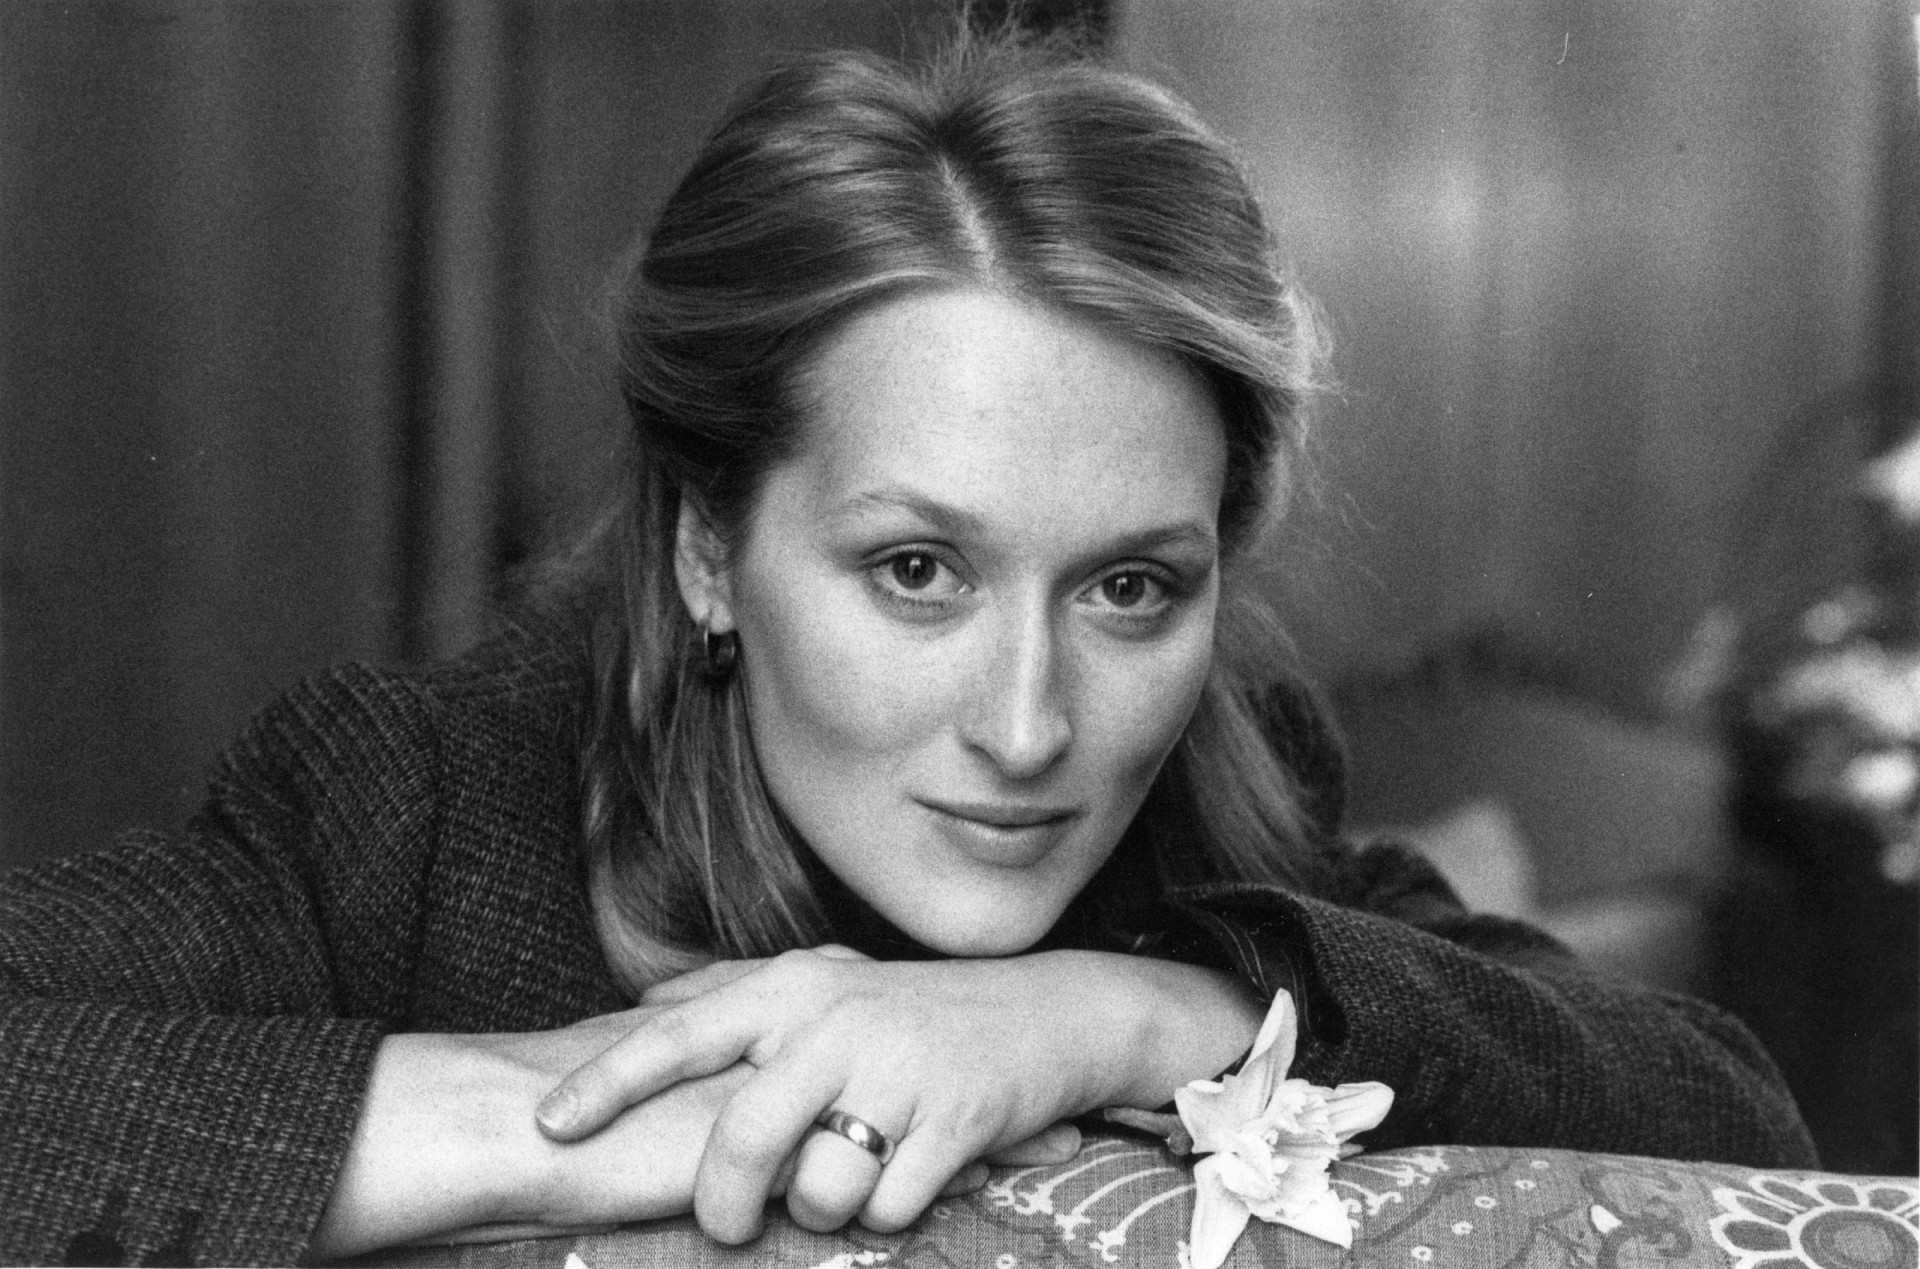 <p>Meryl Streep, eine der angesehensten Schauspielerinnen Hollywoods, spielte bereits in fast 90 Filmen mit. Ihr Debüt war eine kleine Rolle in "Julia" im Jahr 1977. Der Film dreht sich um eine Bühnenautorin, die Geld nach Nazi-Deutschland schmuggelt.</p><p>Sie können auch mögen:<a href="https://de.starsinsider.com/n/373295?utm_source=msn.com&utm_medium=display&utm_campaign=referral_description&utm_content=706035"> Prinz William: Das Leben des Prinzen in Bildern</a></p>